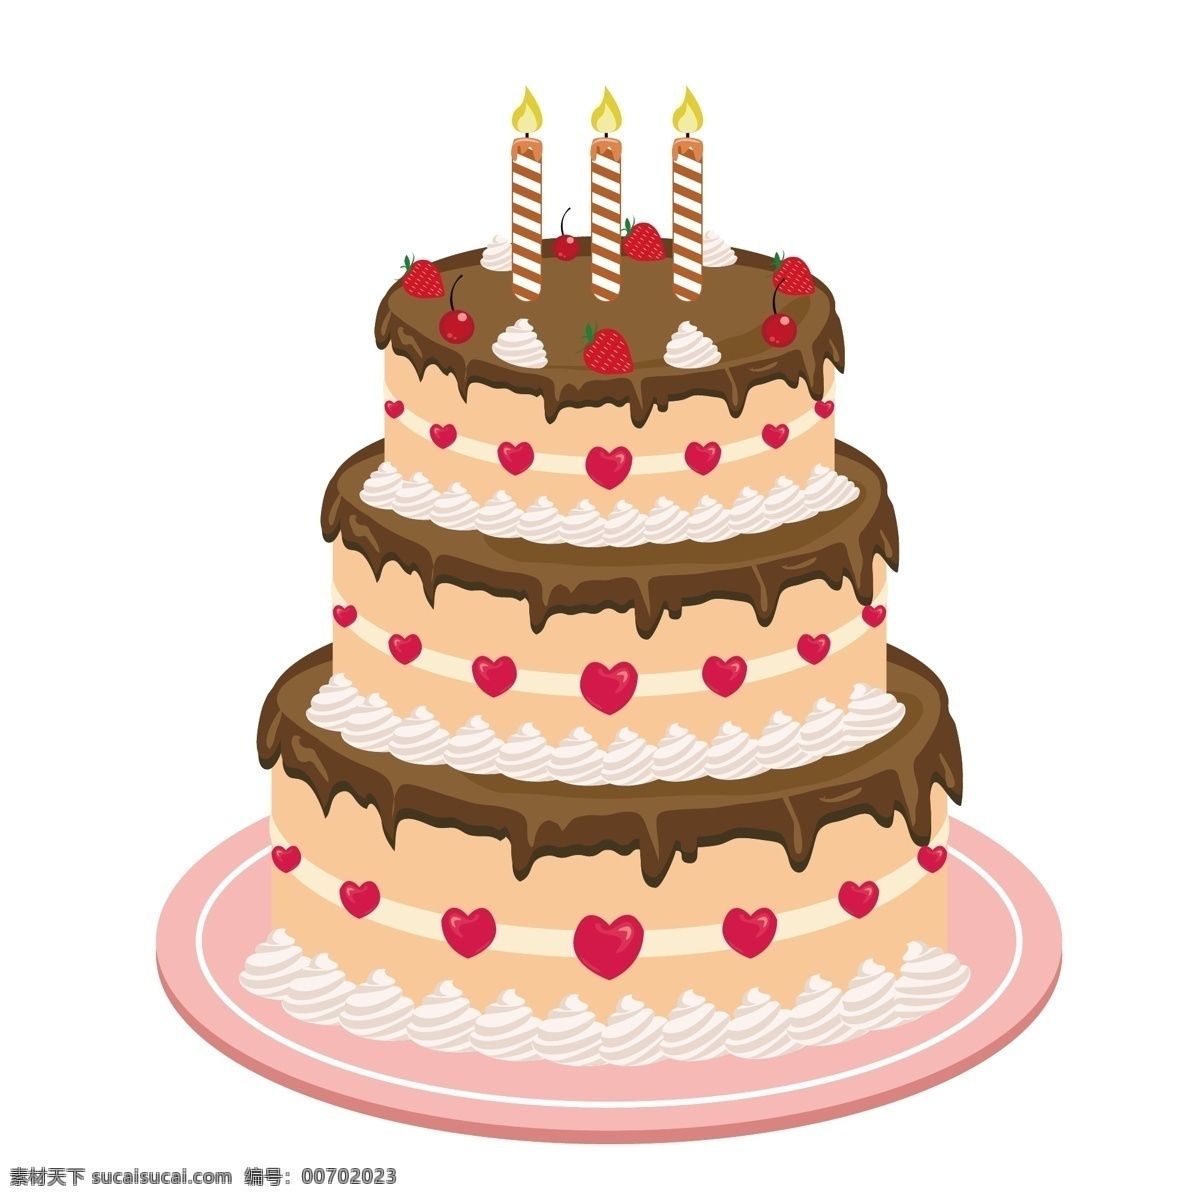 手绘 食物 巧克力 草莓 蓝莓 糖霜 杯子蛋糕 元素 海报素材 蛋糕组合 装饰图案 素材图